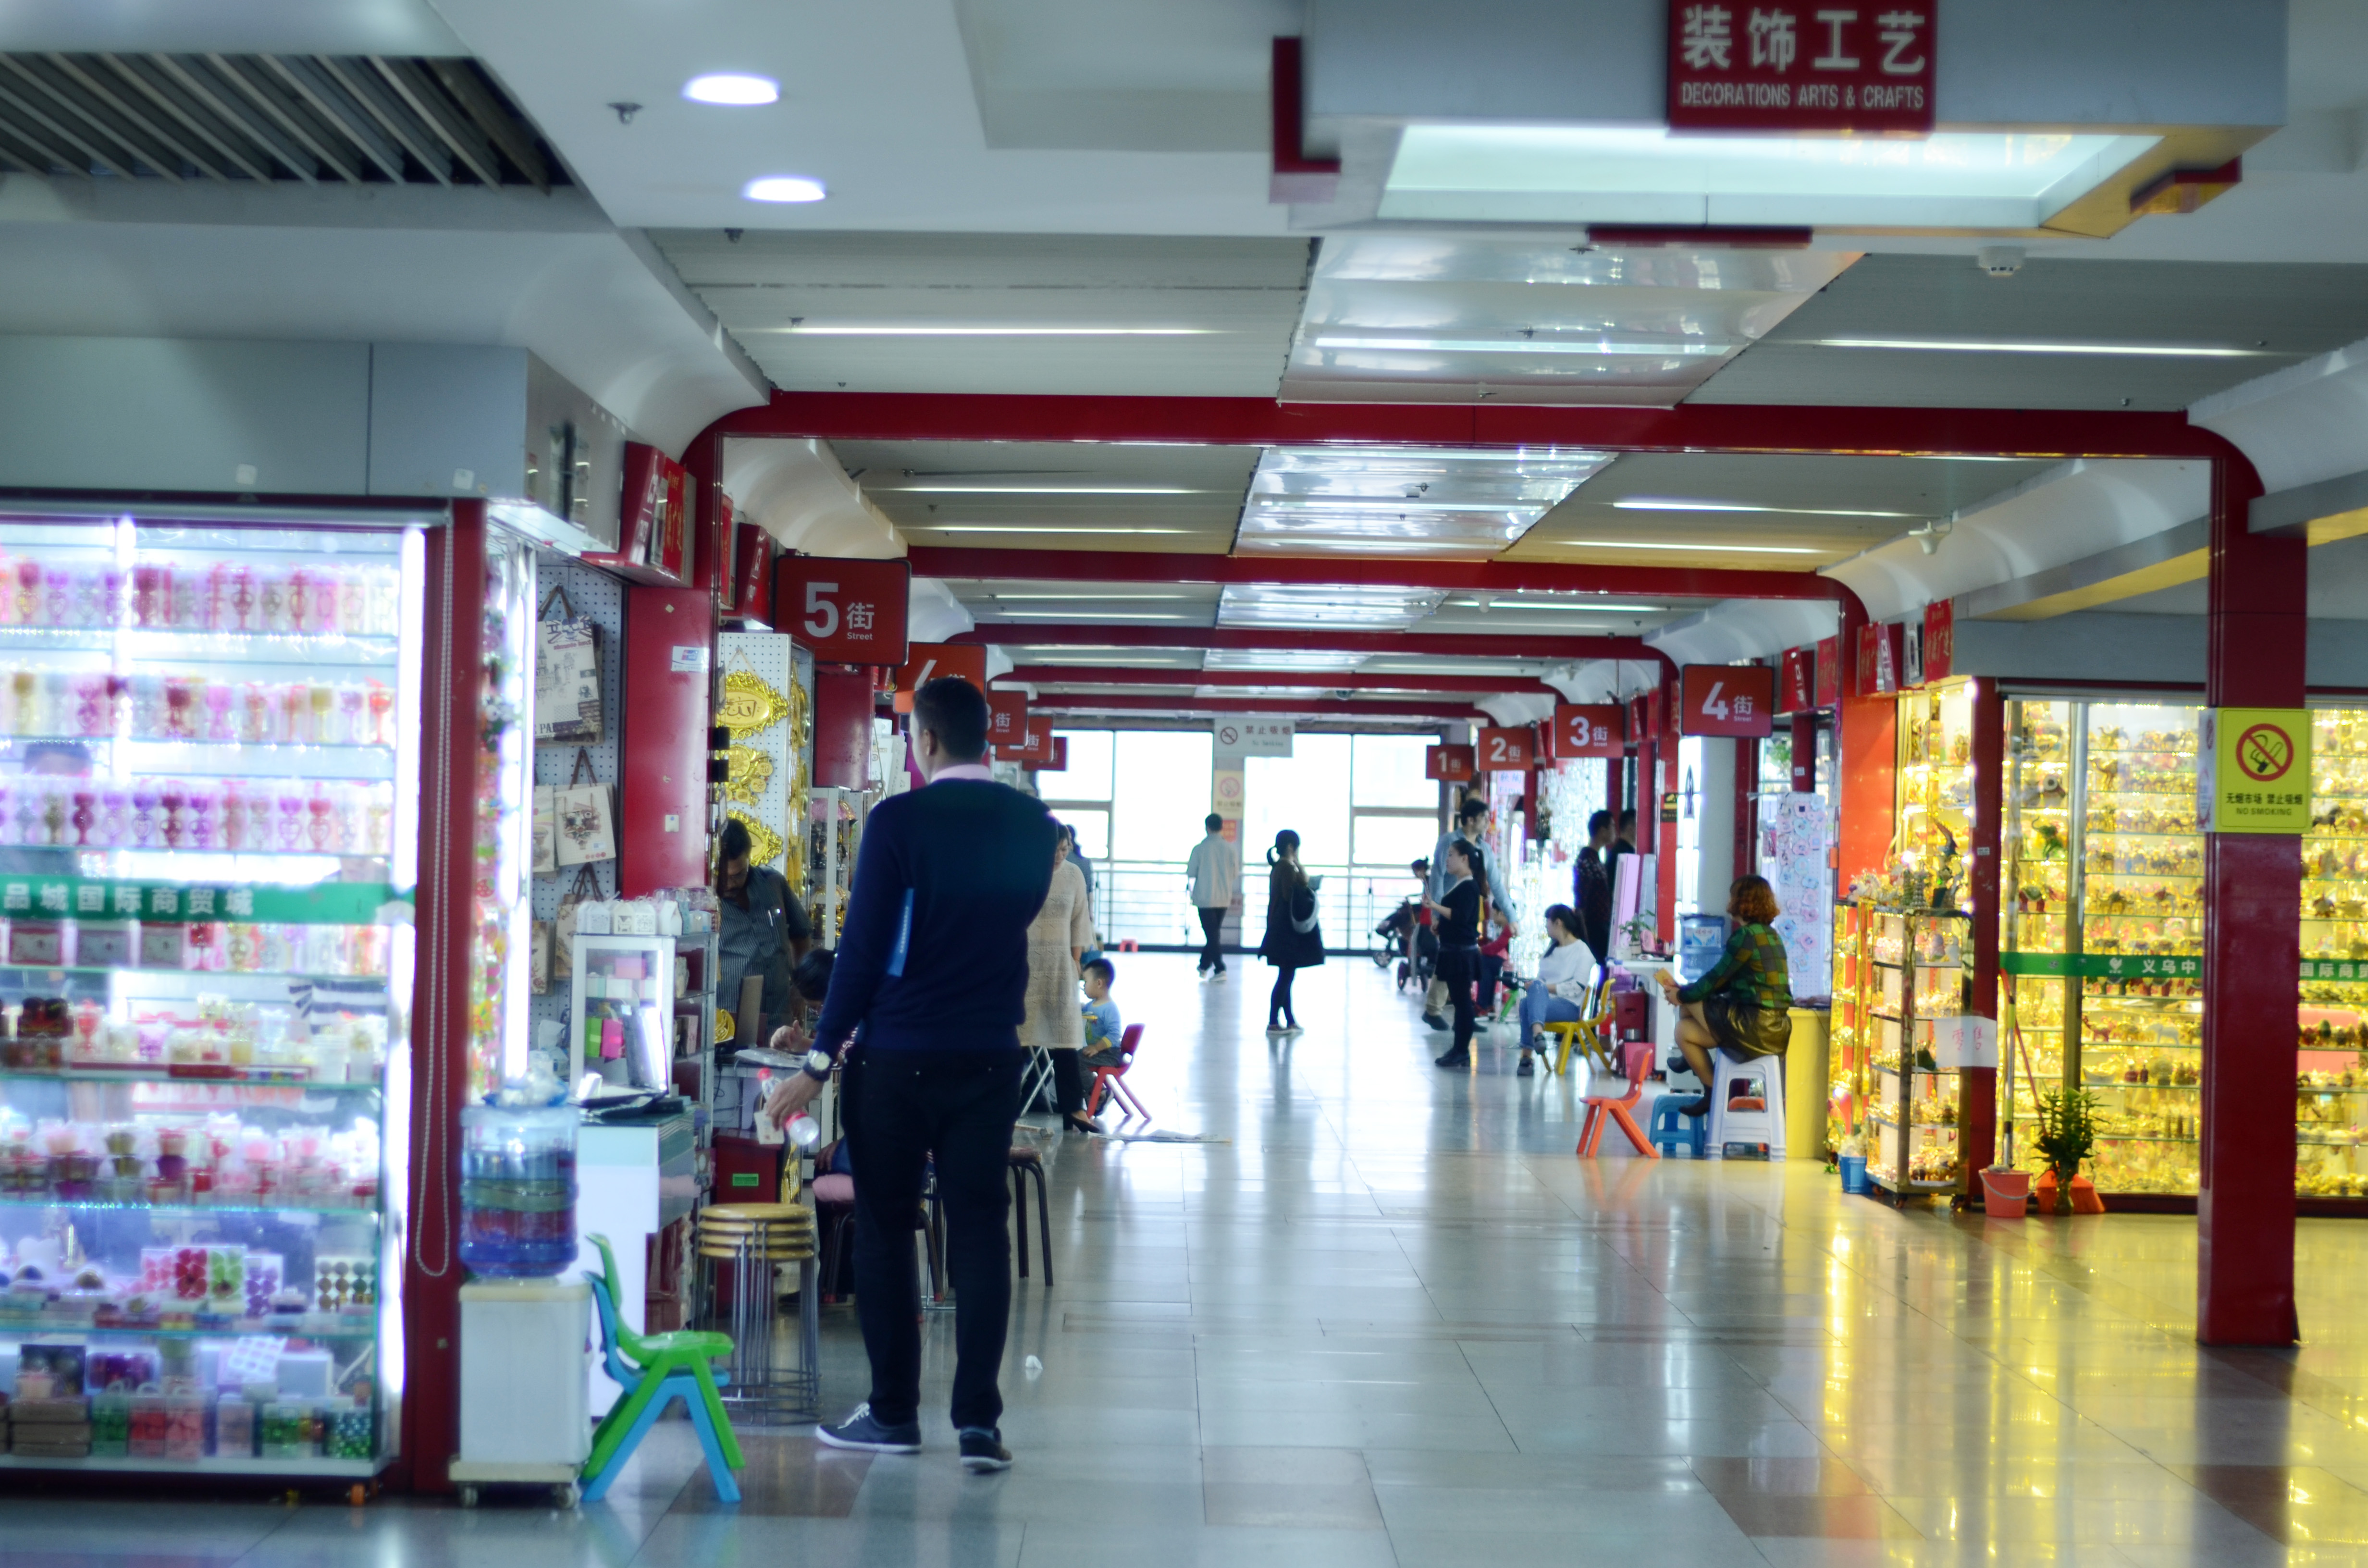 Decoration area of Yiwu market